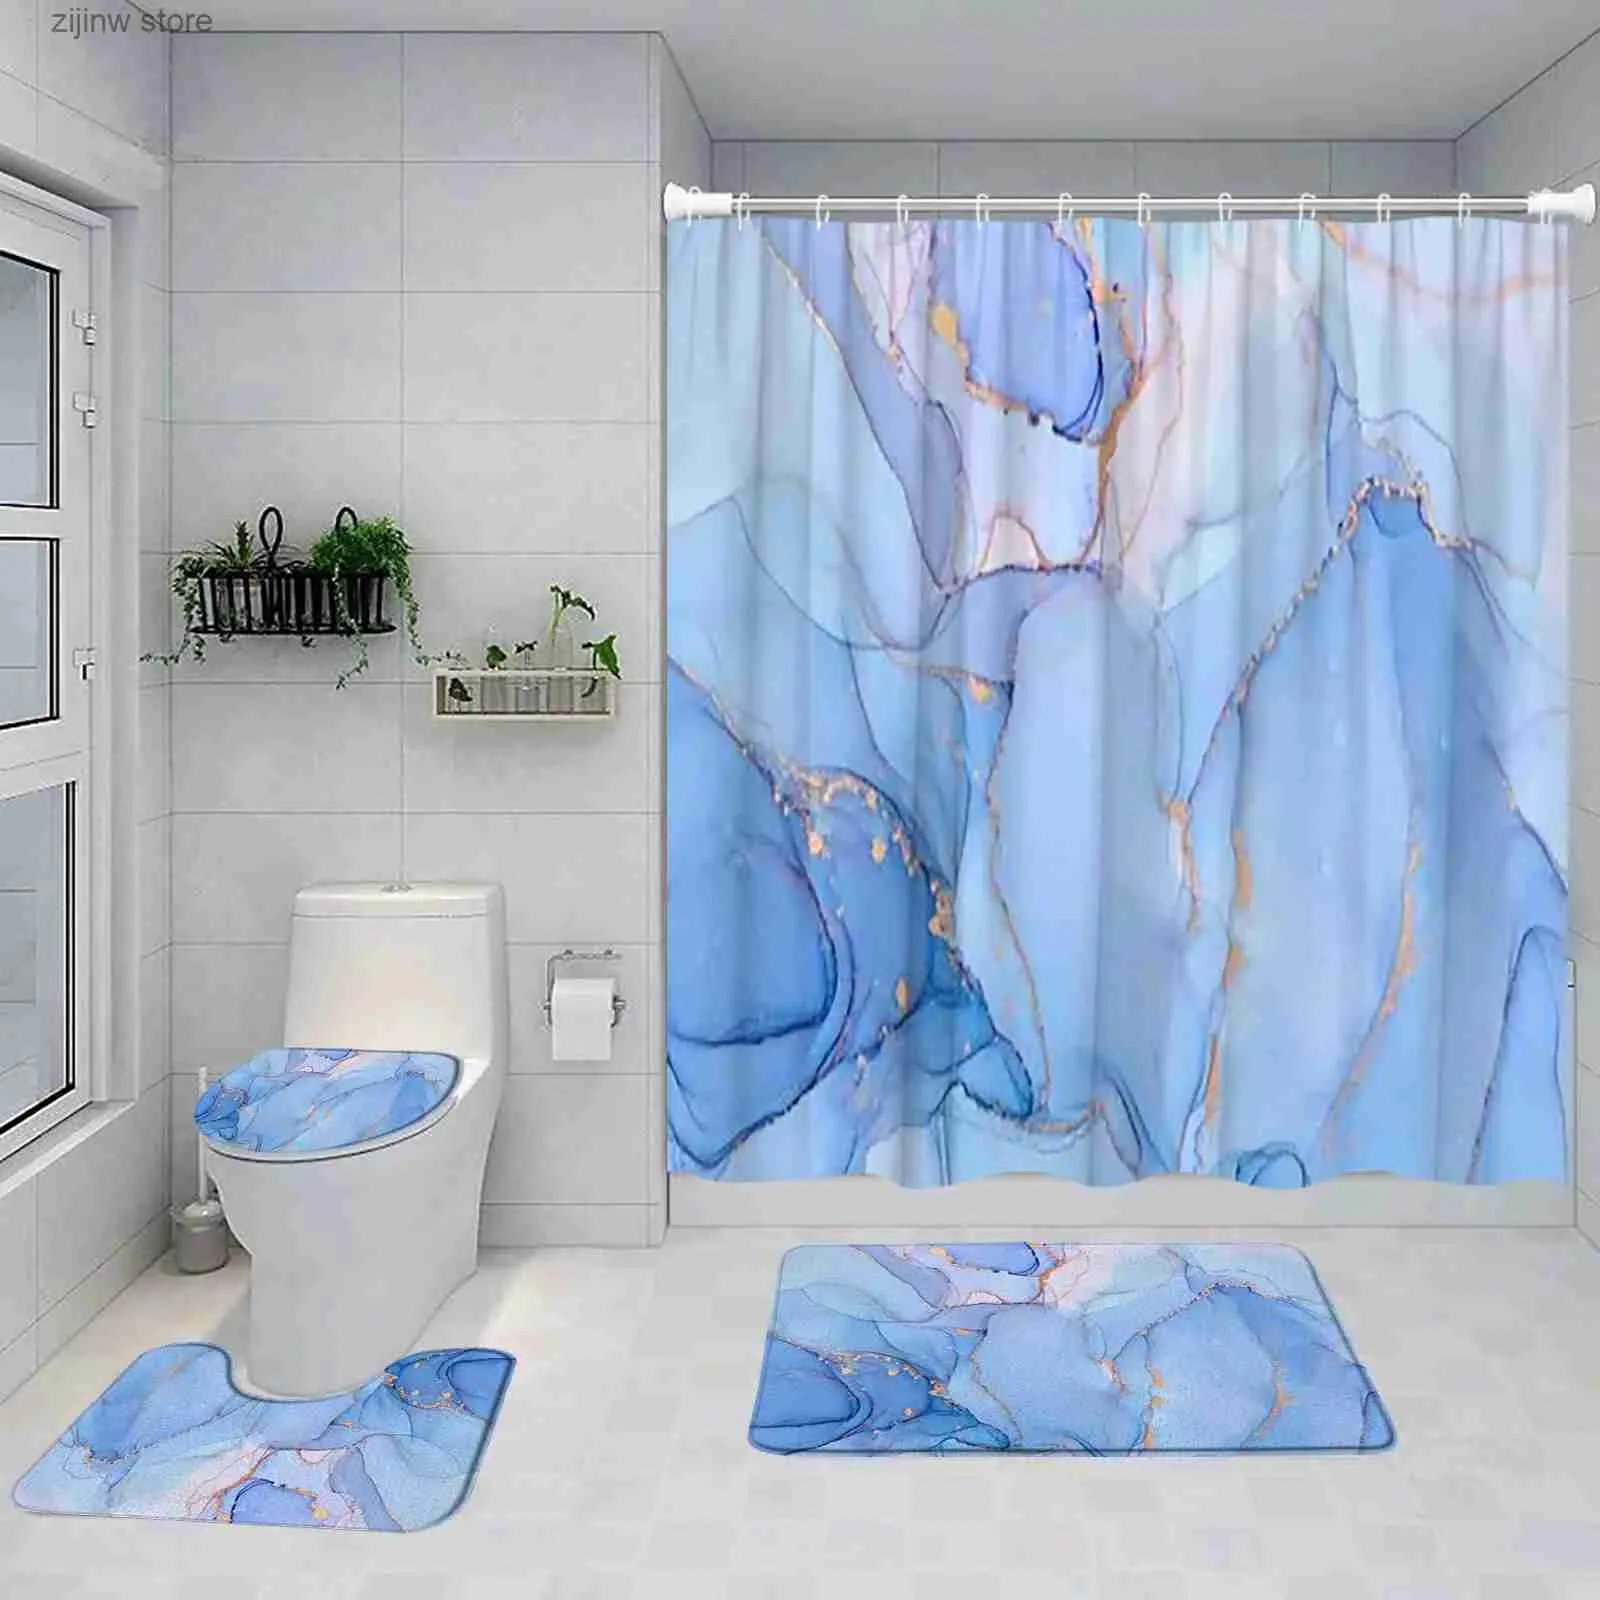 الستائر الدش الأزرق رخام الستار مجموعة الفن الملخص رسمت الحمام الحديثة ديكور حمام حصيرة السجادة السجادة غير سجادة غطاء غطاء غطاء y240316